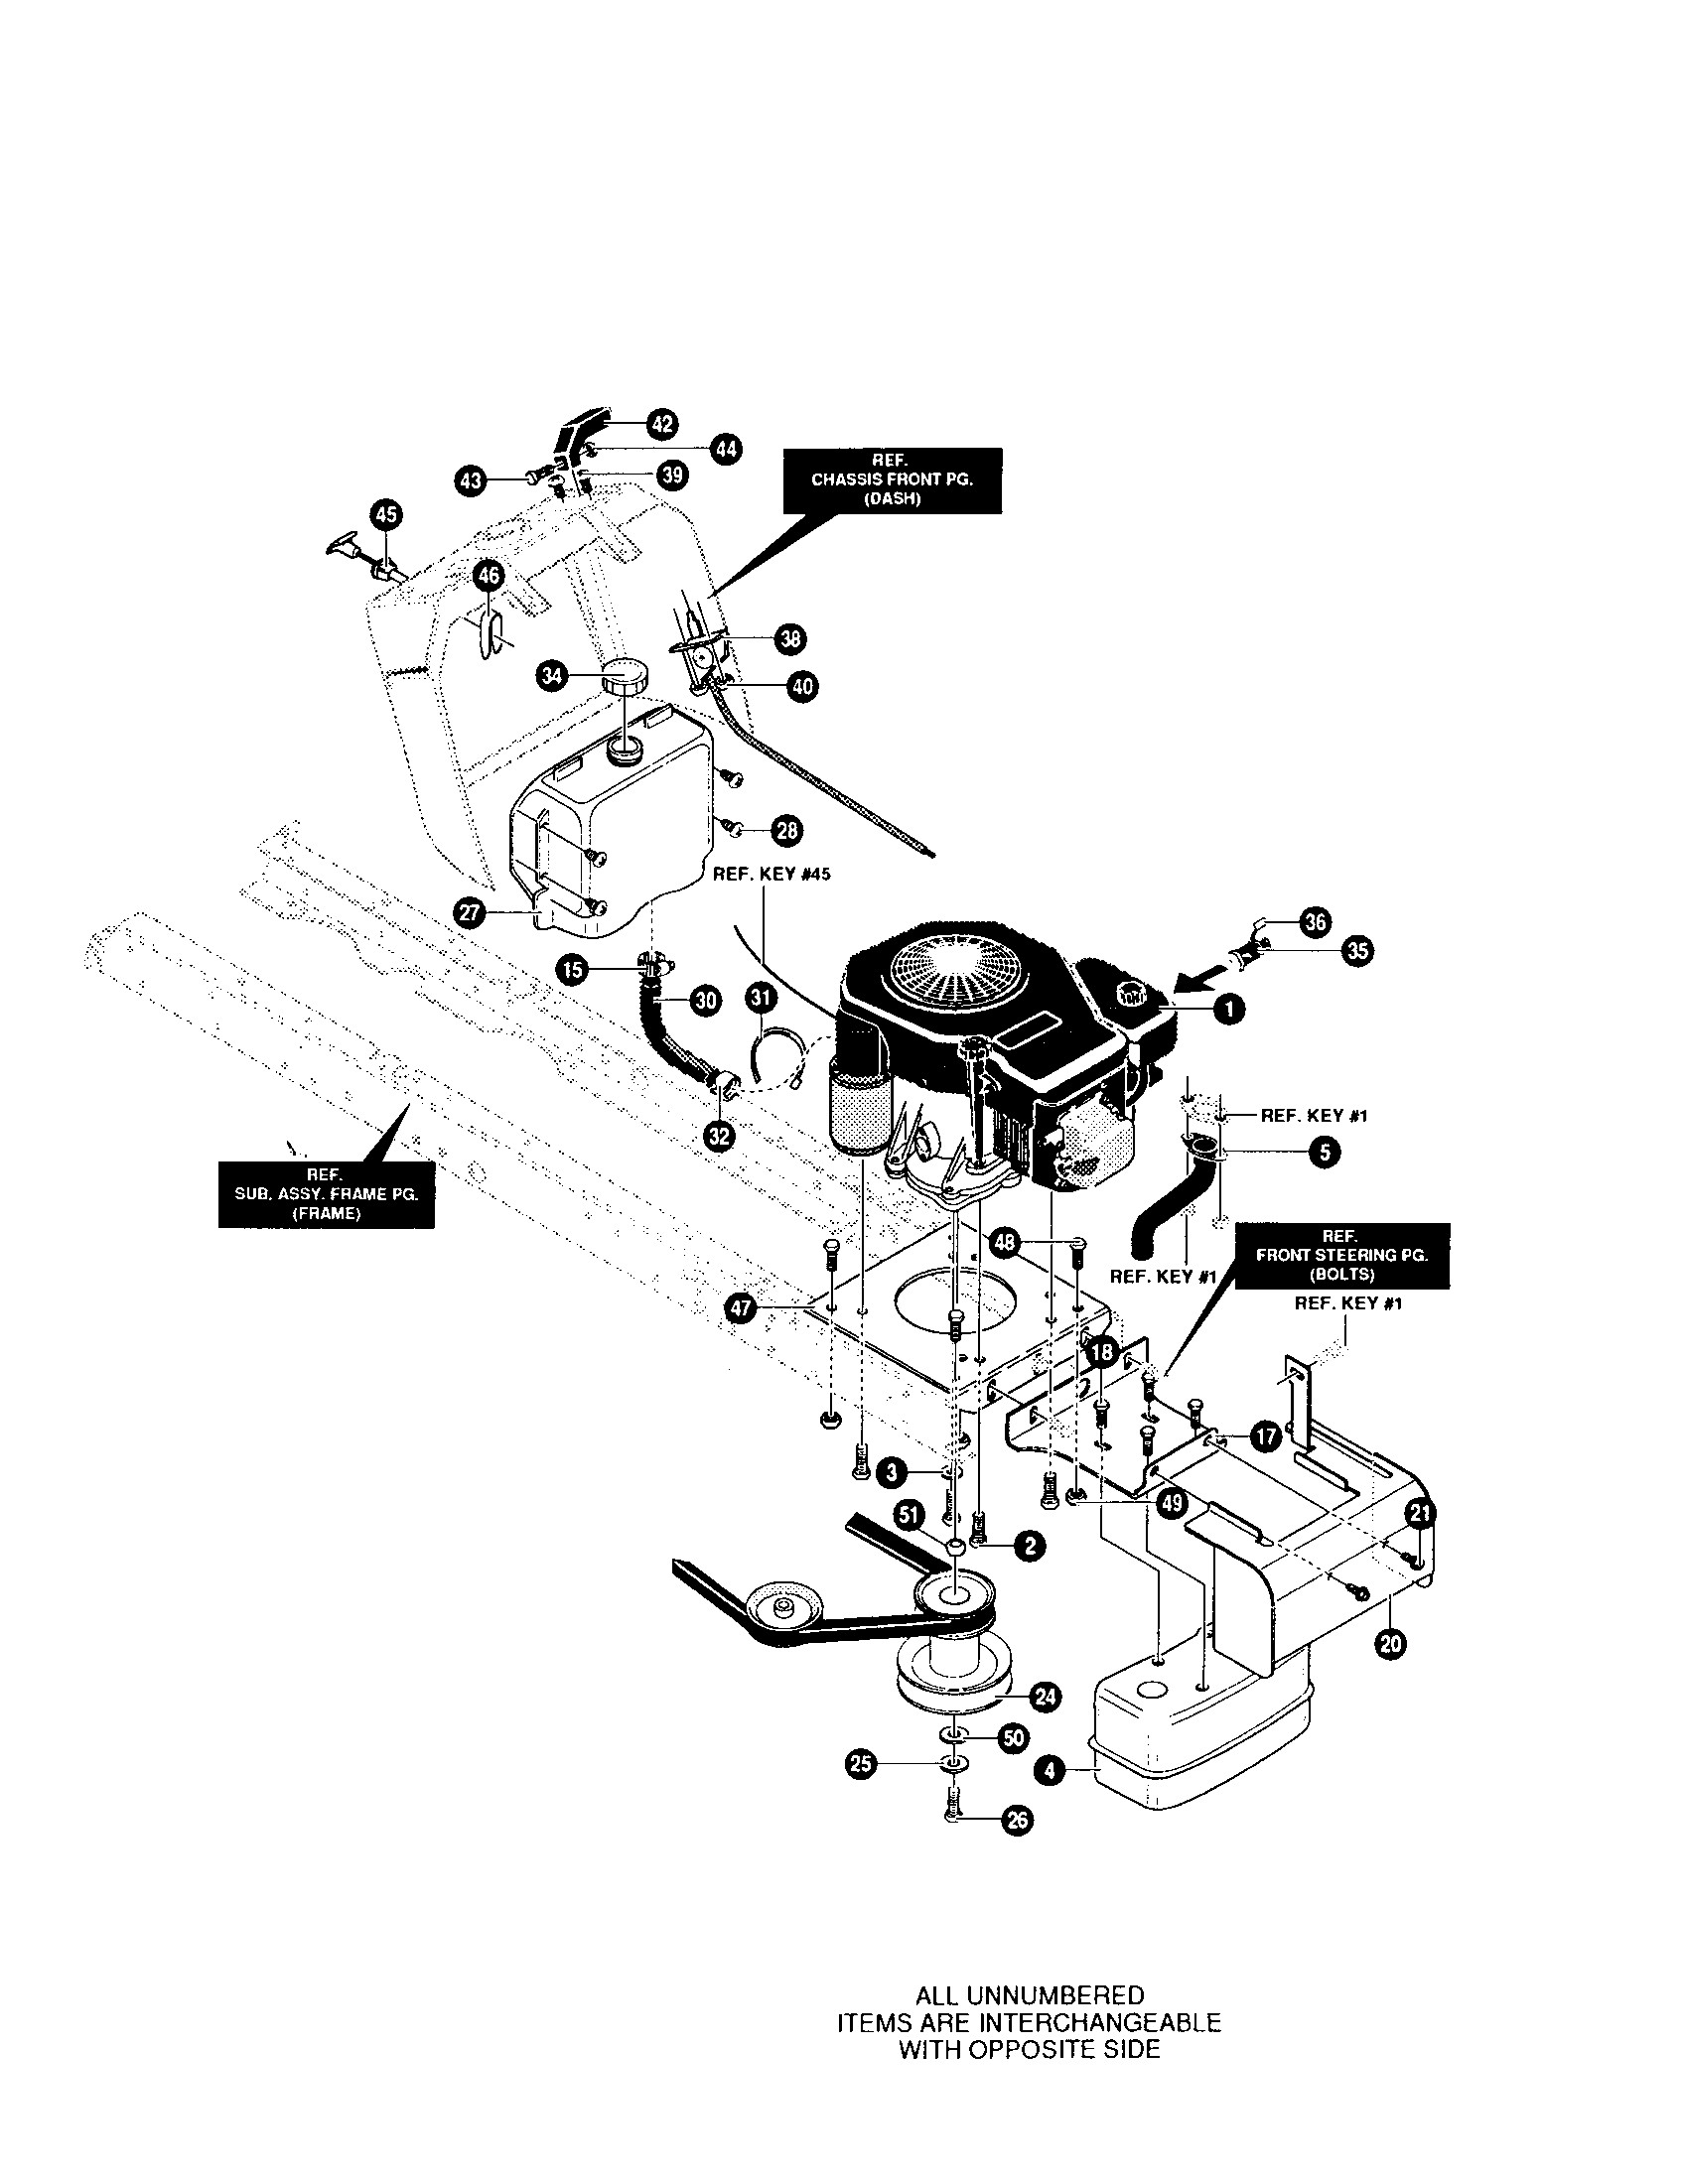 Kohler Engine Parts Diagram Motor Parts Kohler Motor Parts Of Kohler Engine Parts Diagram